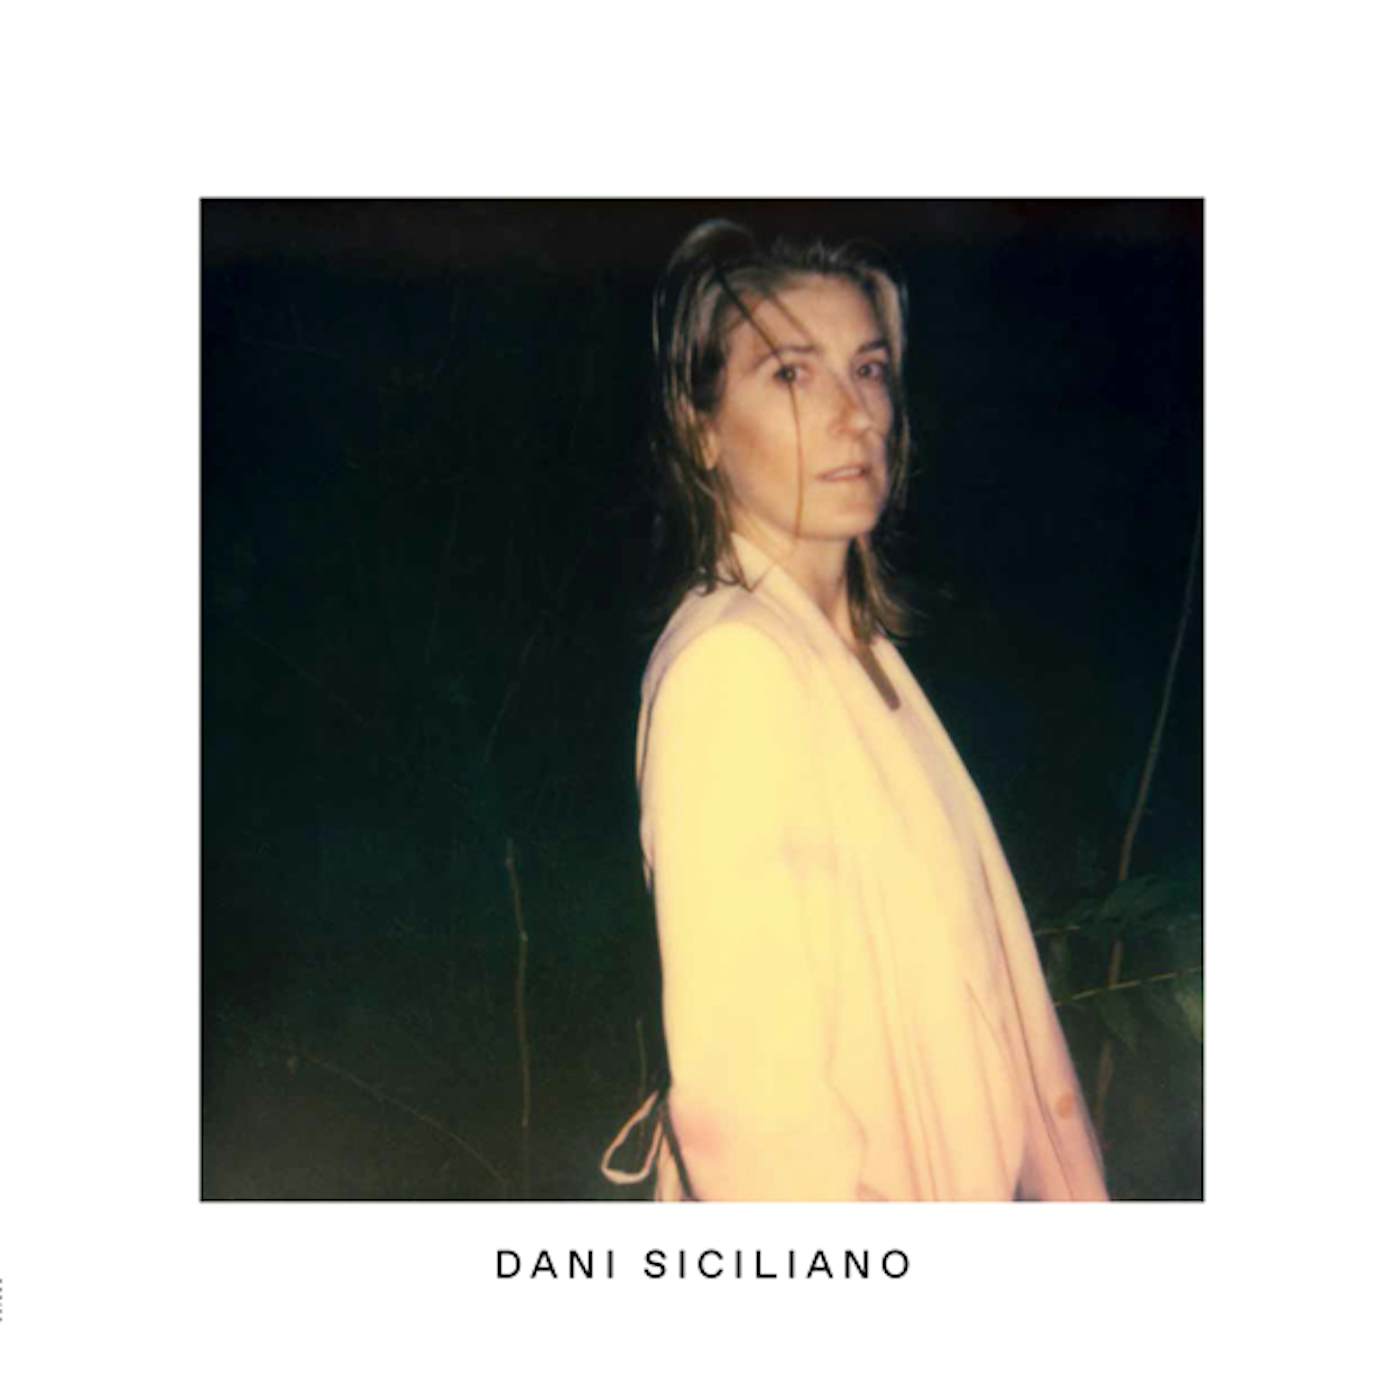 Dani Siciliano Vinyl Record